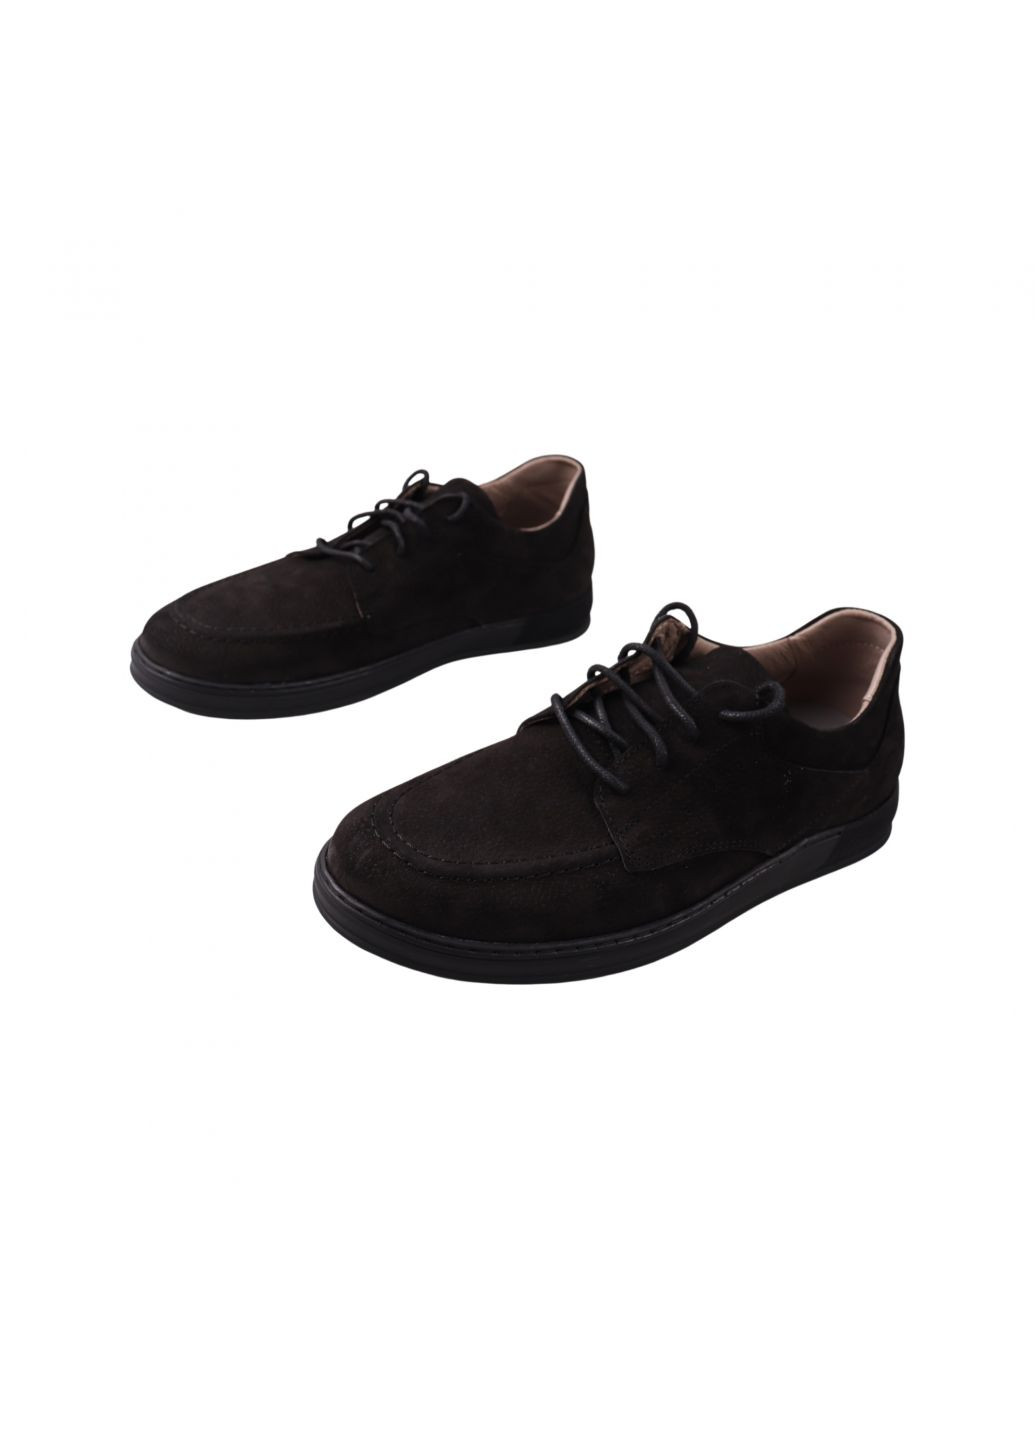 Черные туфли мужские черные натуральный нубук Vadrus